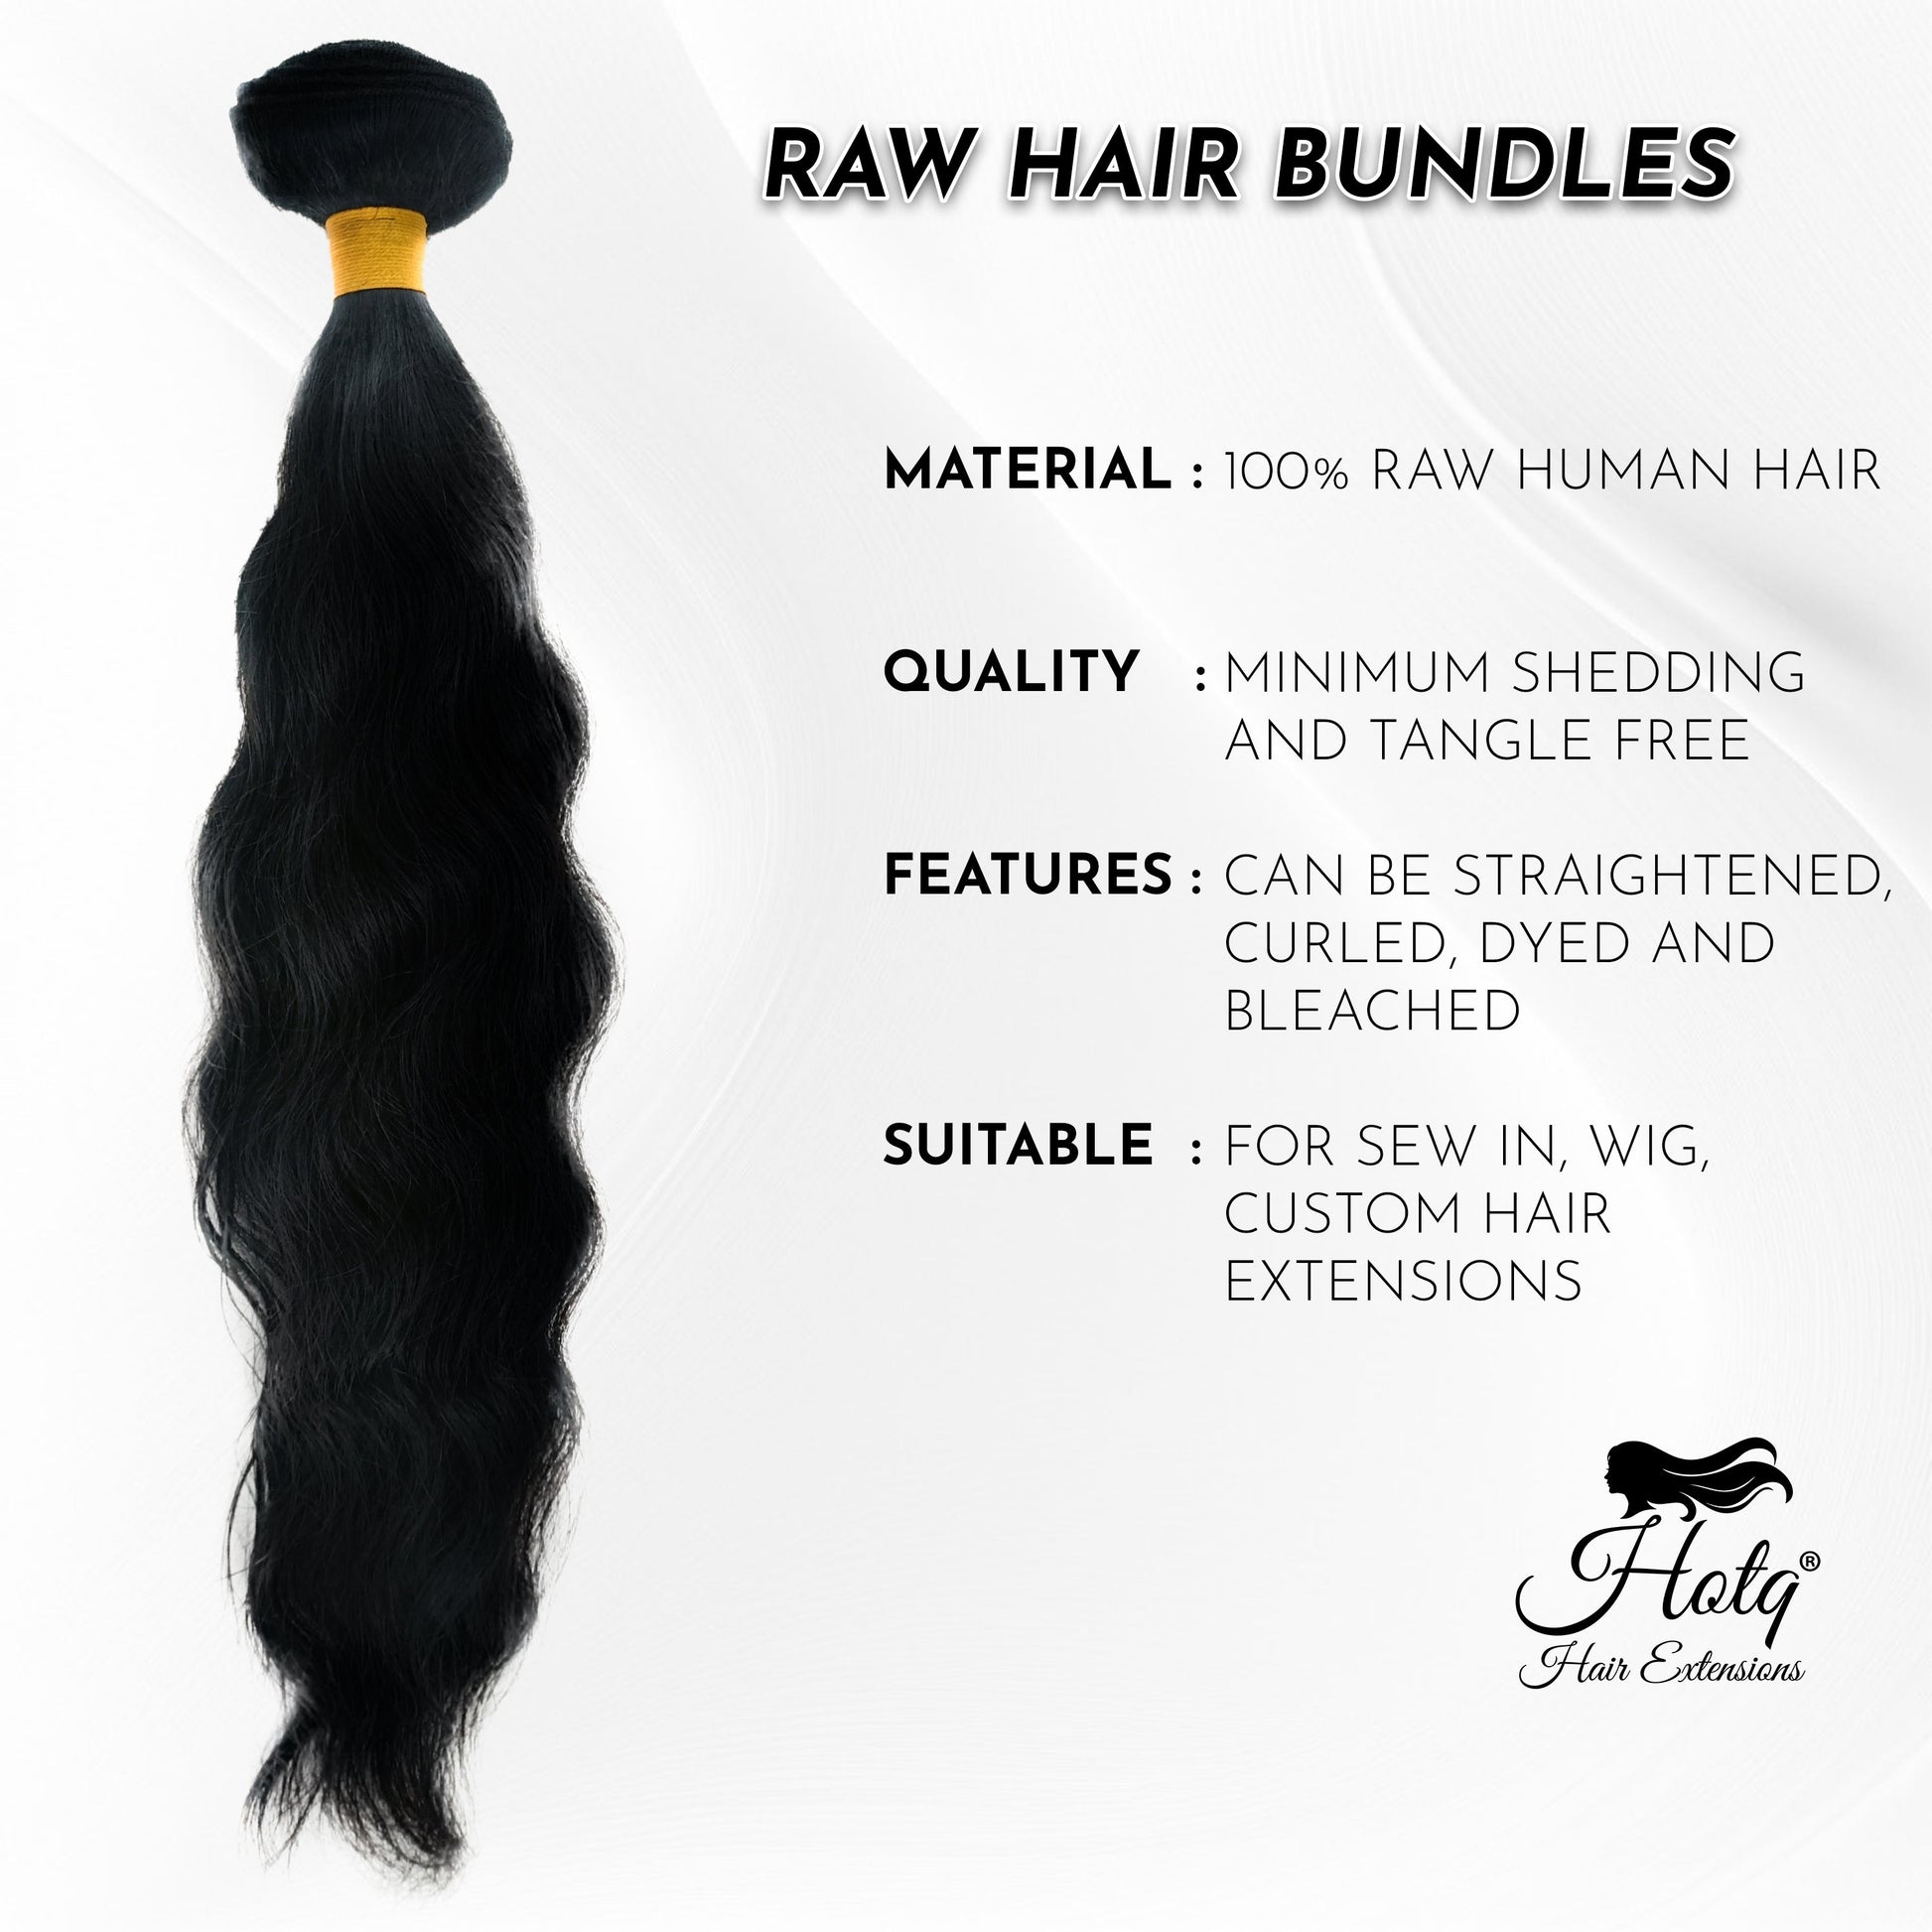 Indian Raw Hair Bundles - HOTQ HAIR